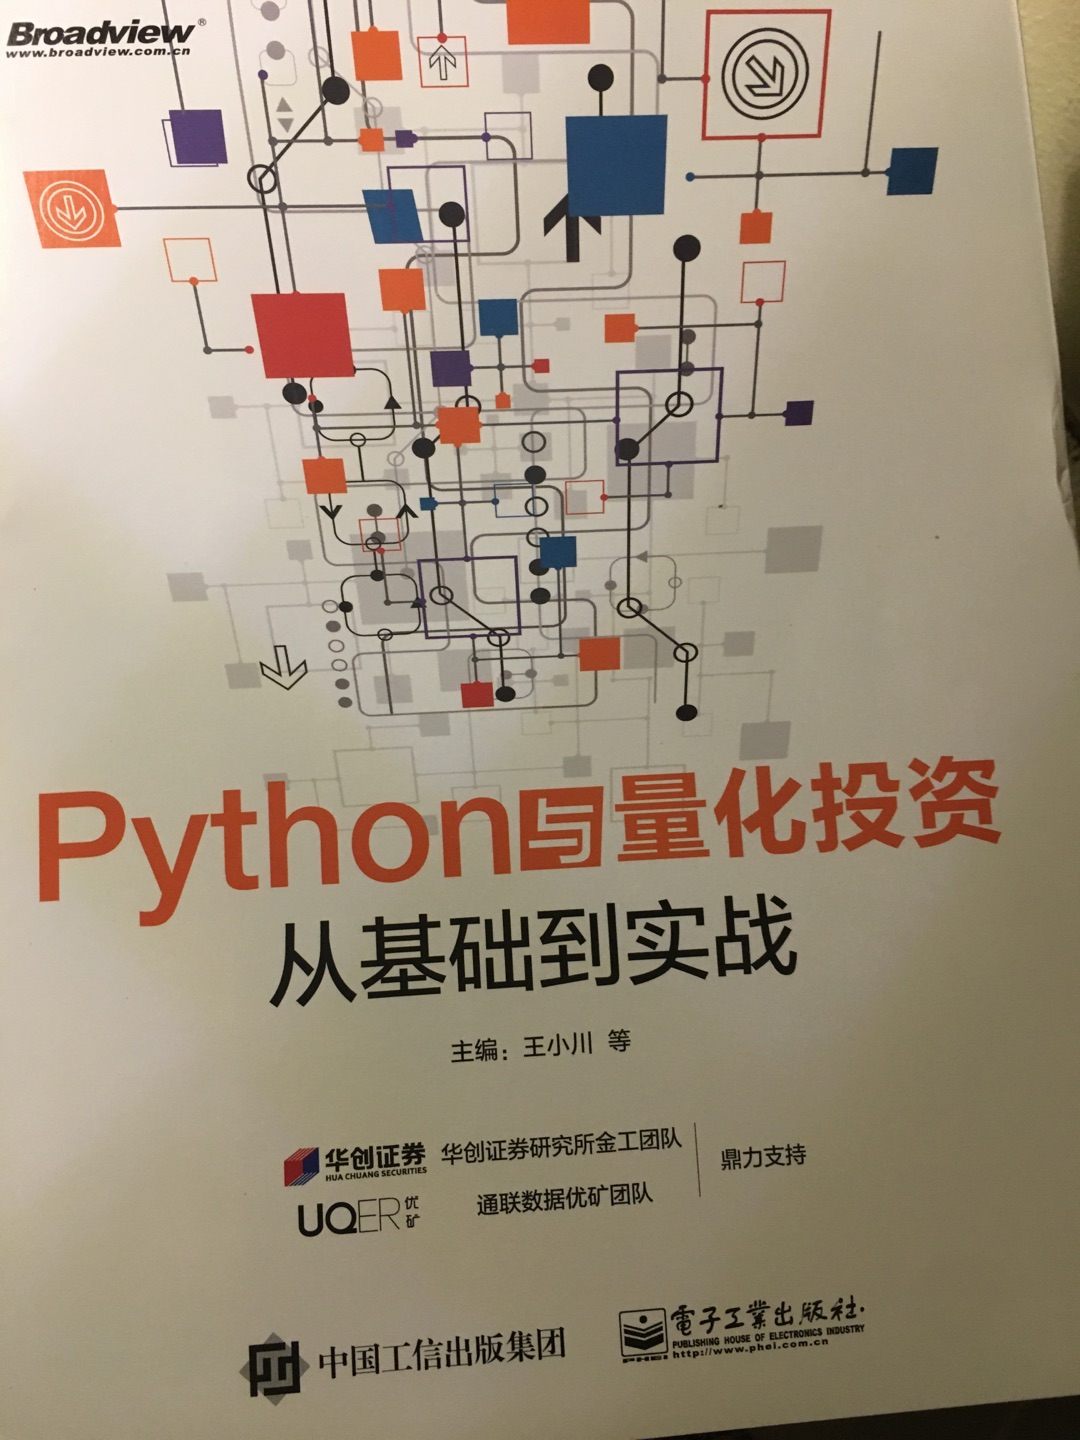 主要讲解利用Python进行量化投资，有大量关于数据分析应用，介绍如何用Python解决投资策略问题